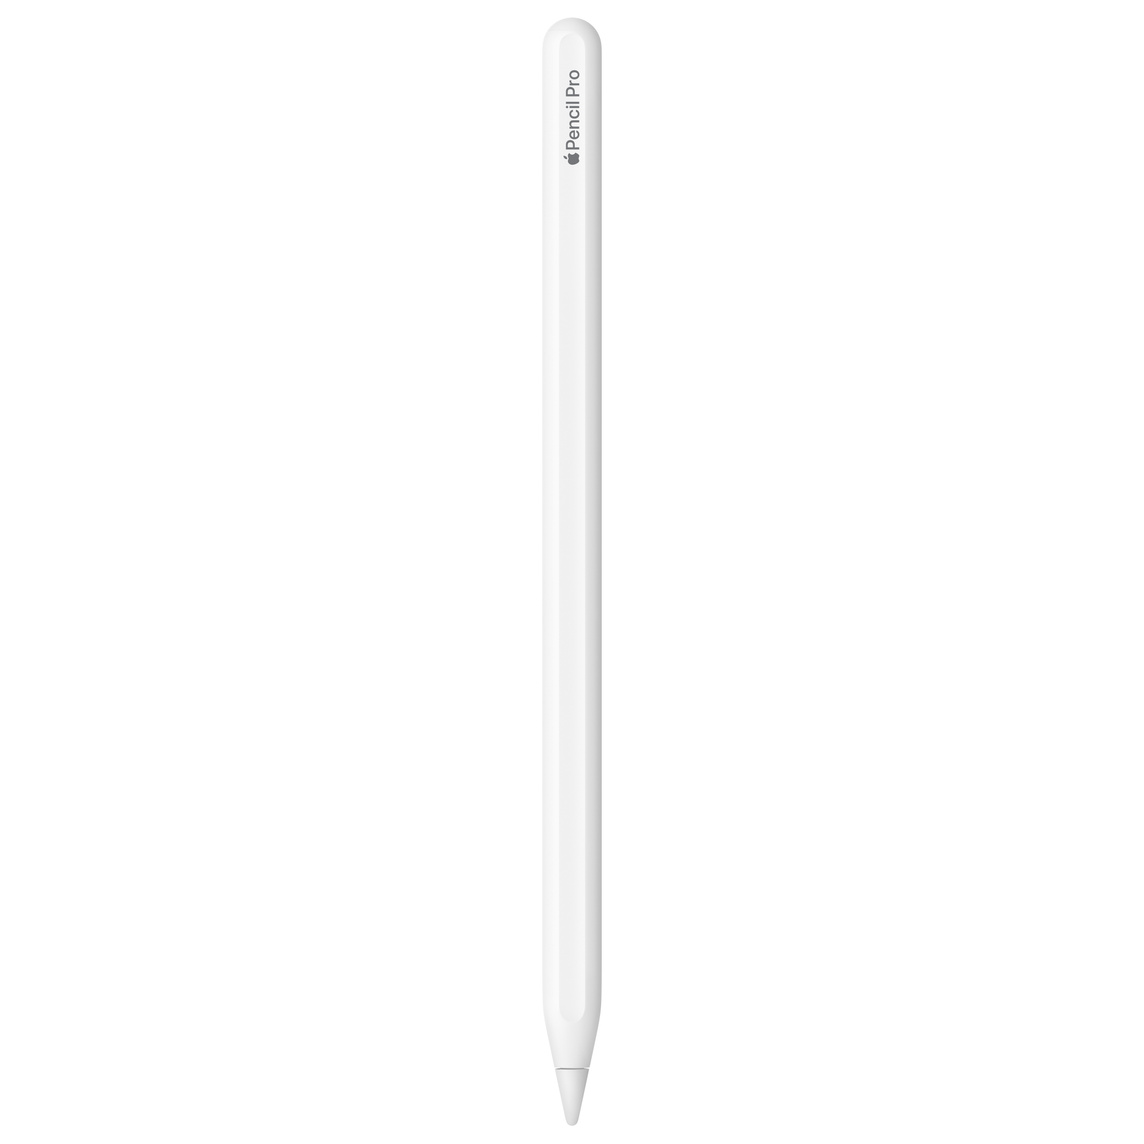 Apple Pencil Pro blanco con un grabado compuesto por el logotipo de Apple y las palabras «Pencil Pro»